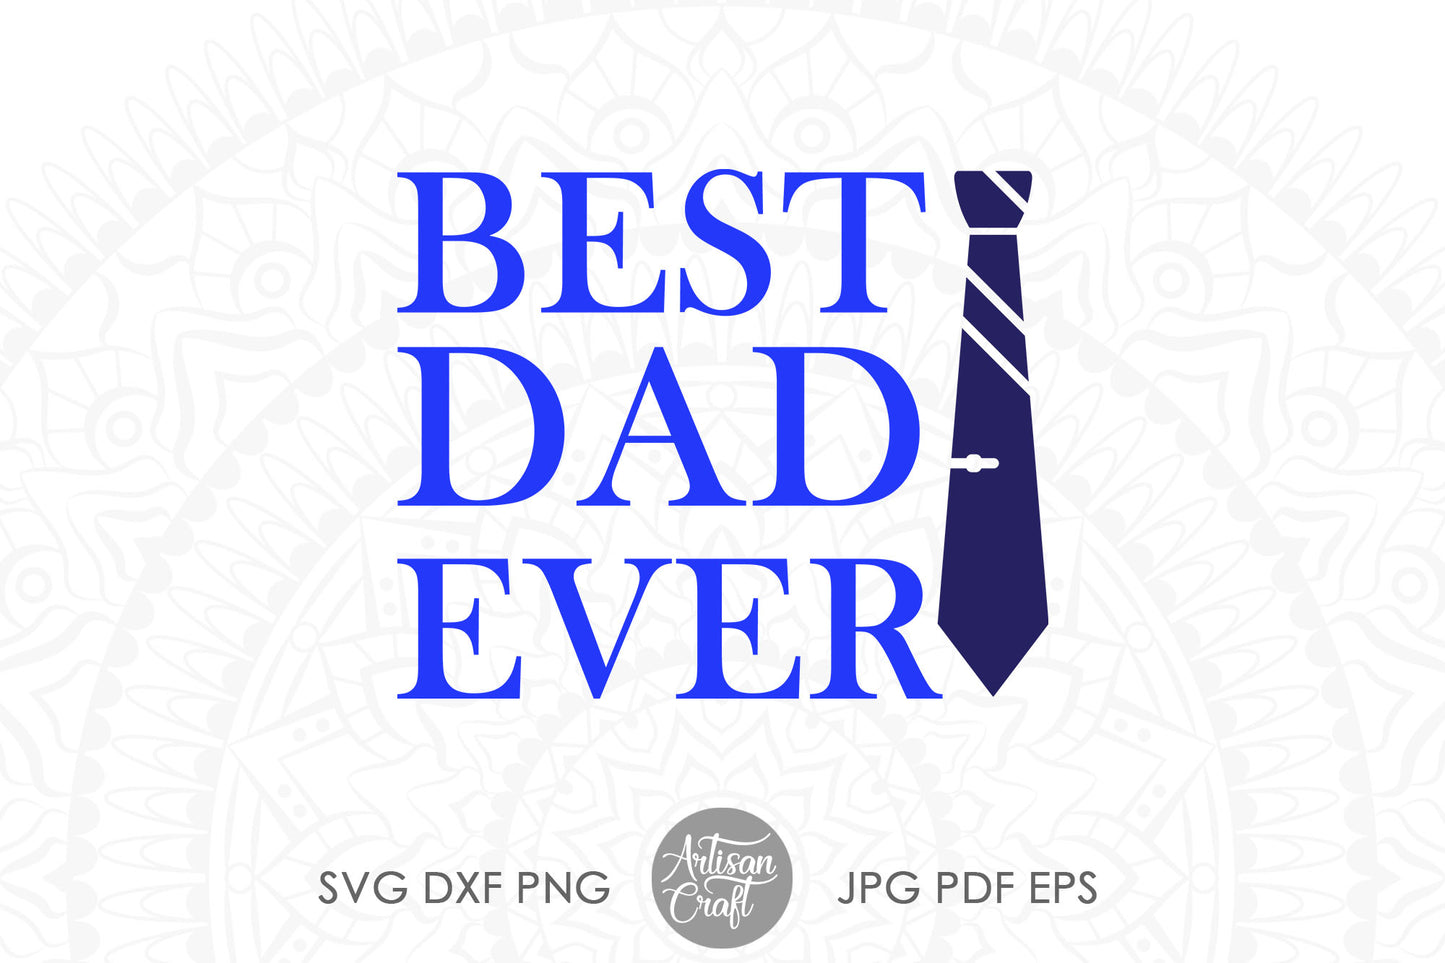 Best Dad Ever SVG with neck tie